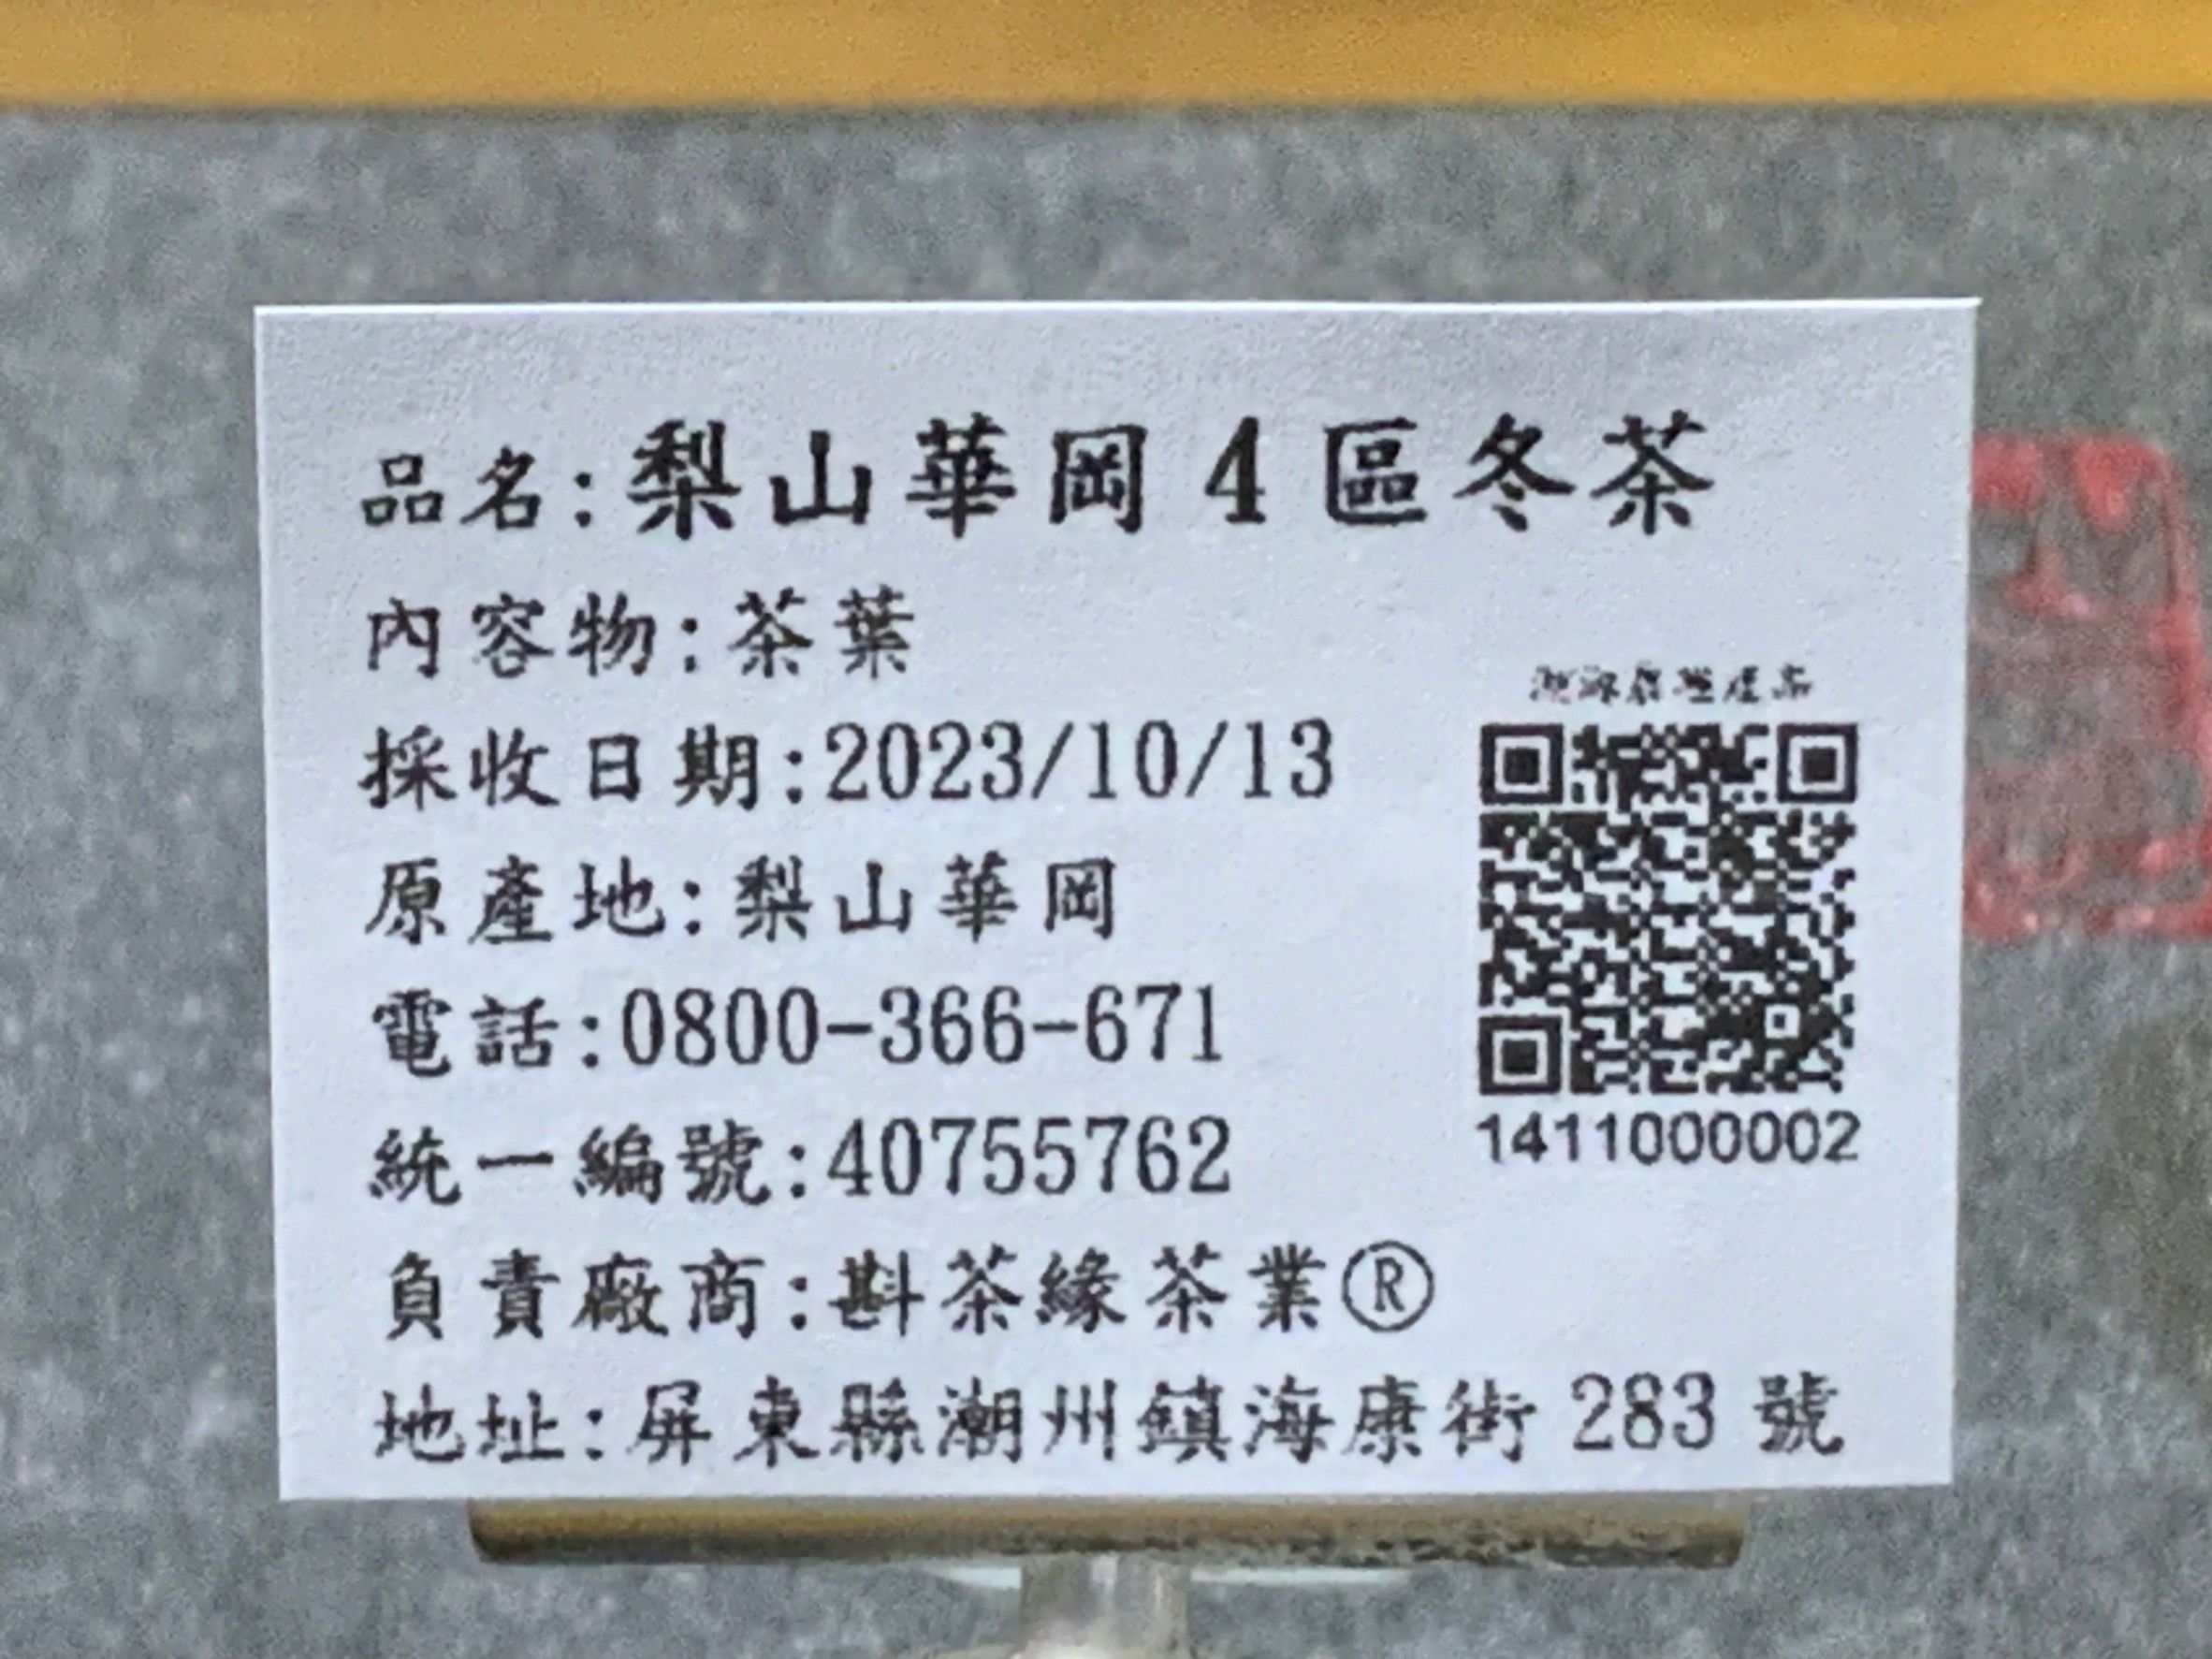 【斟茶緣】2023年梨山華崗之『4區』烏龍冬茶（10月13日採收）  1斤3600元、2兩的2包900元